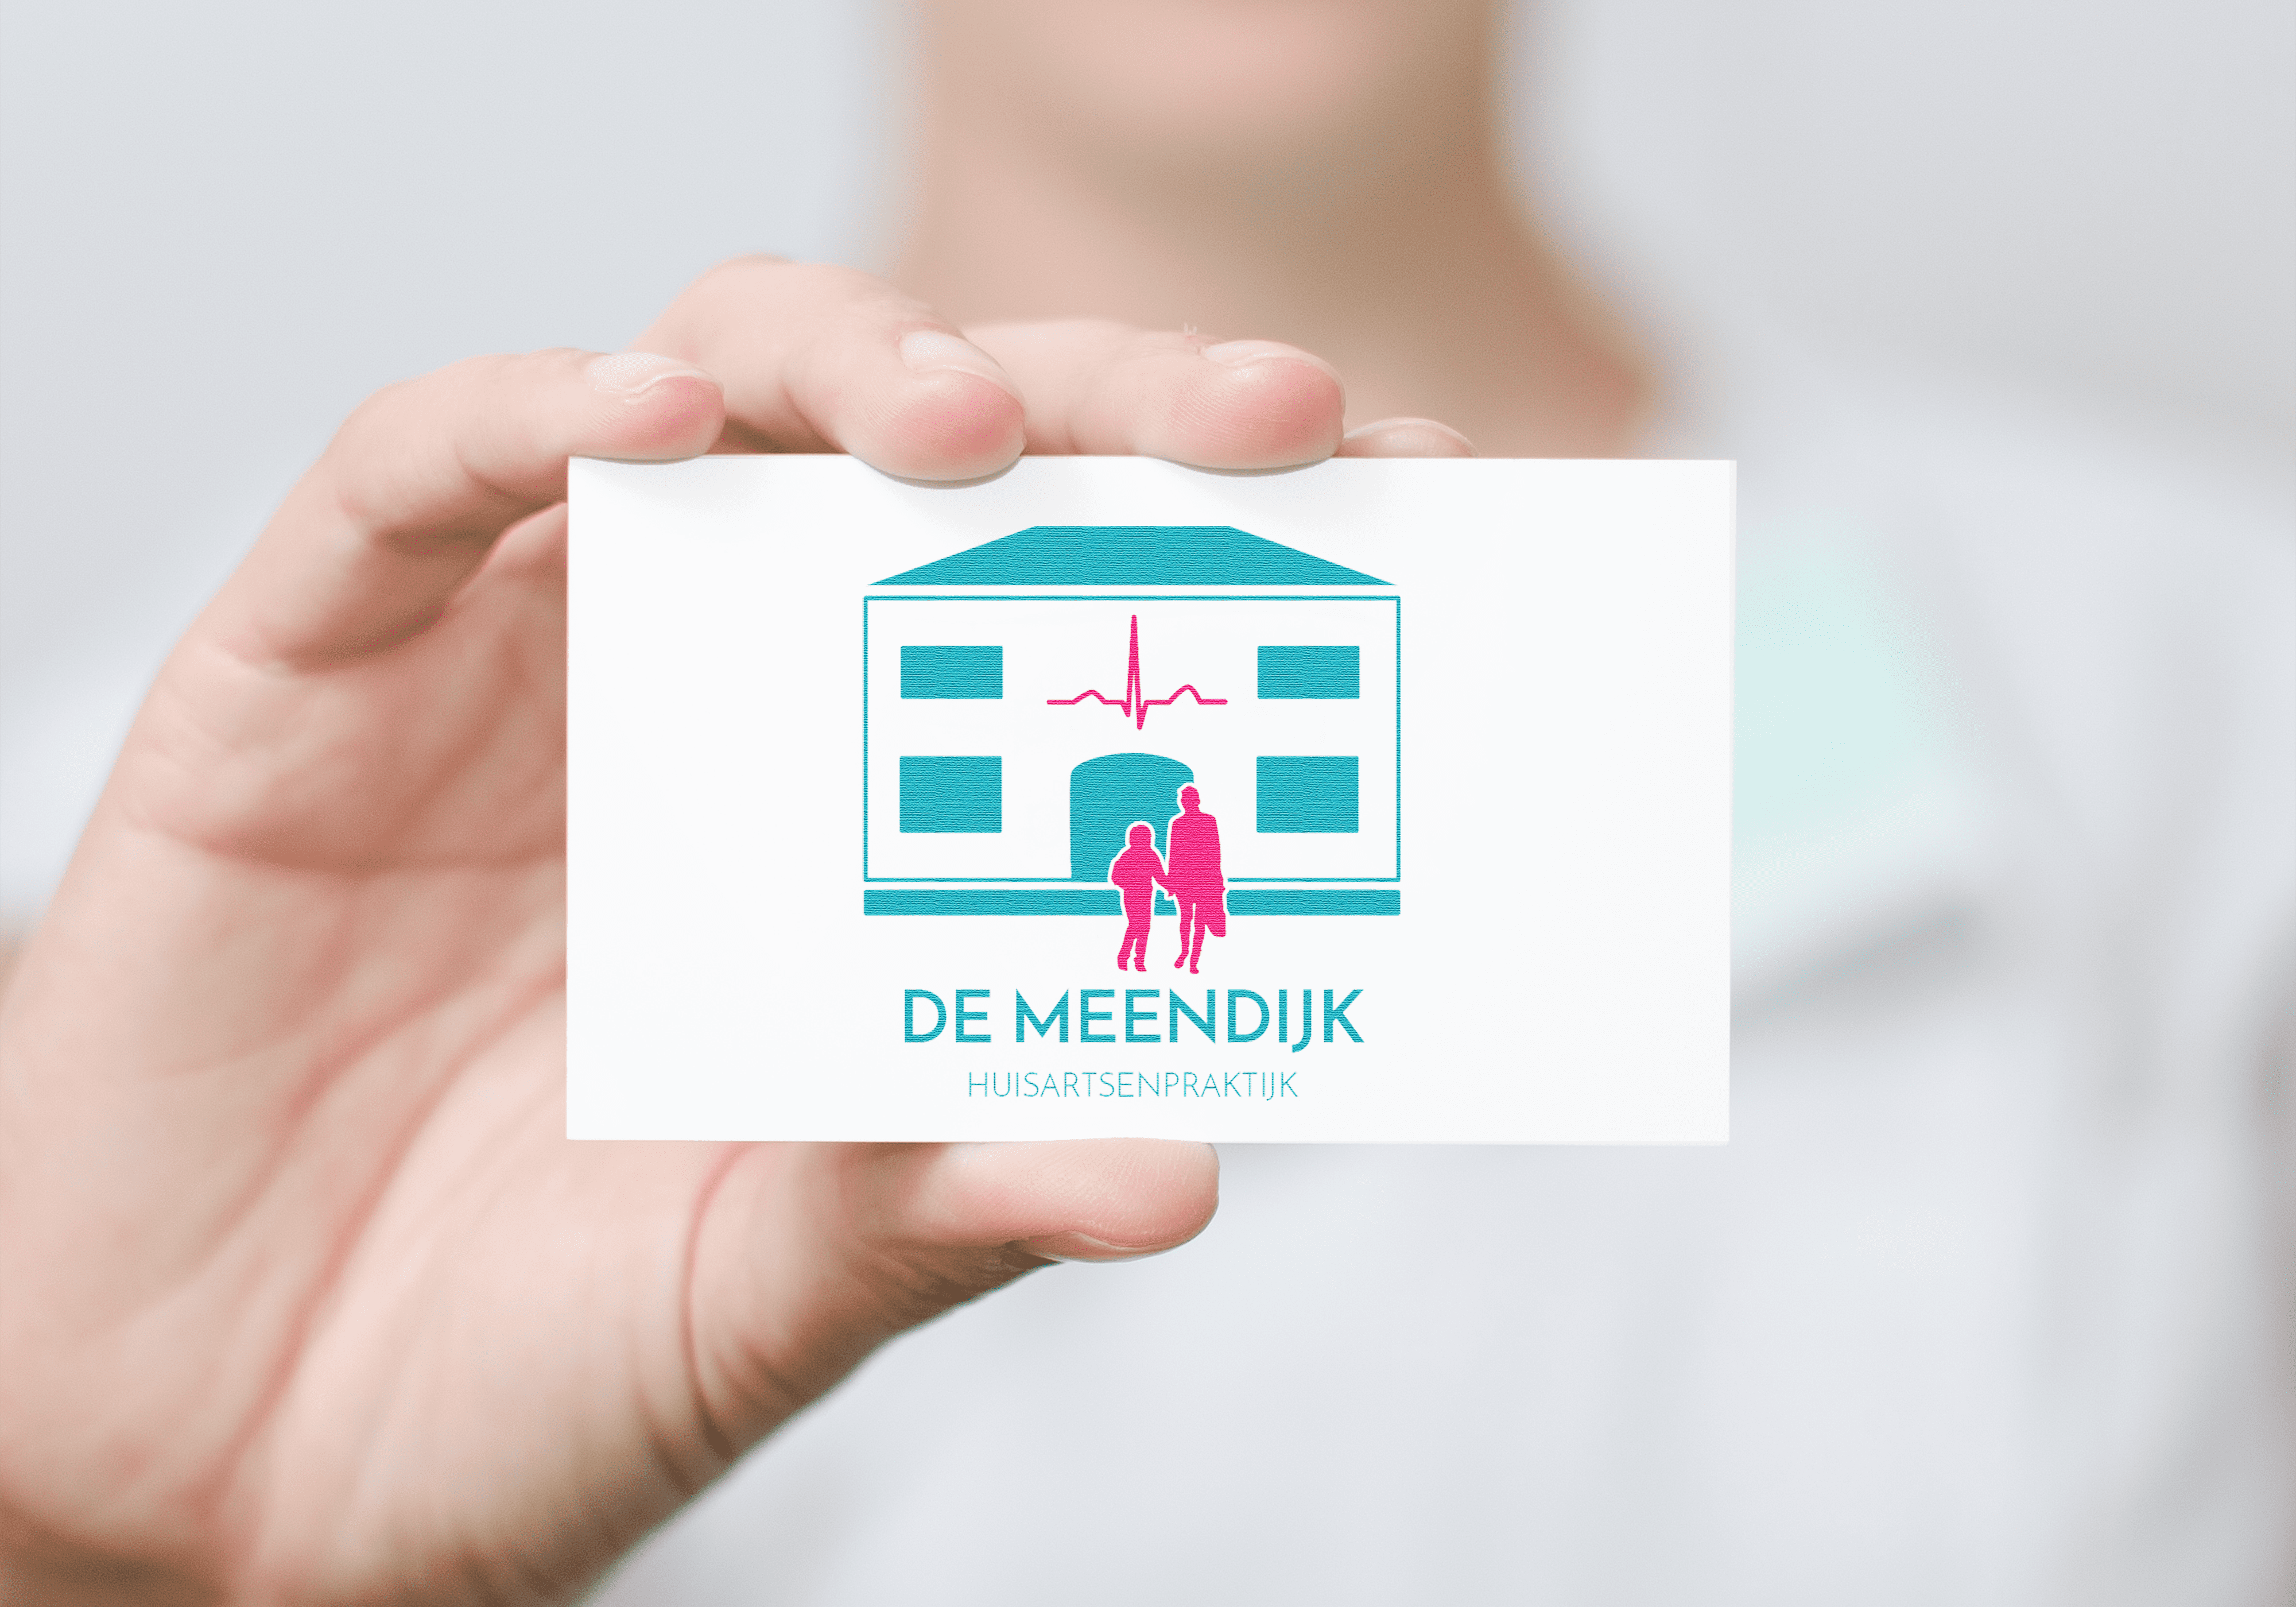 01-004_logo-demeendijk-4000×2799